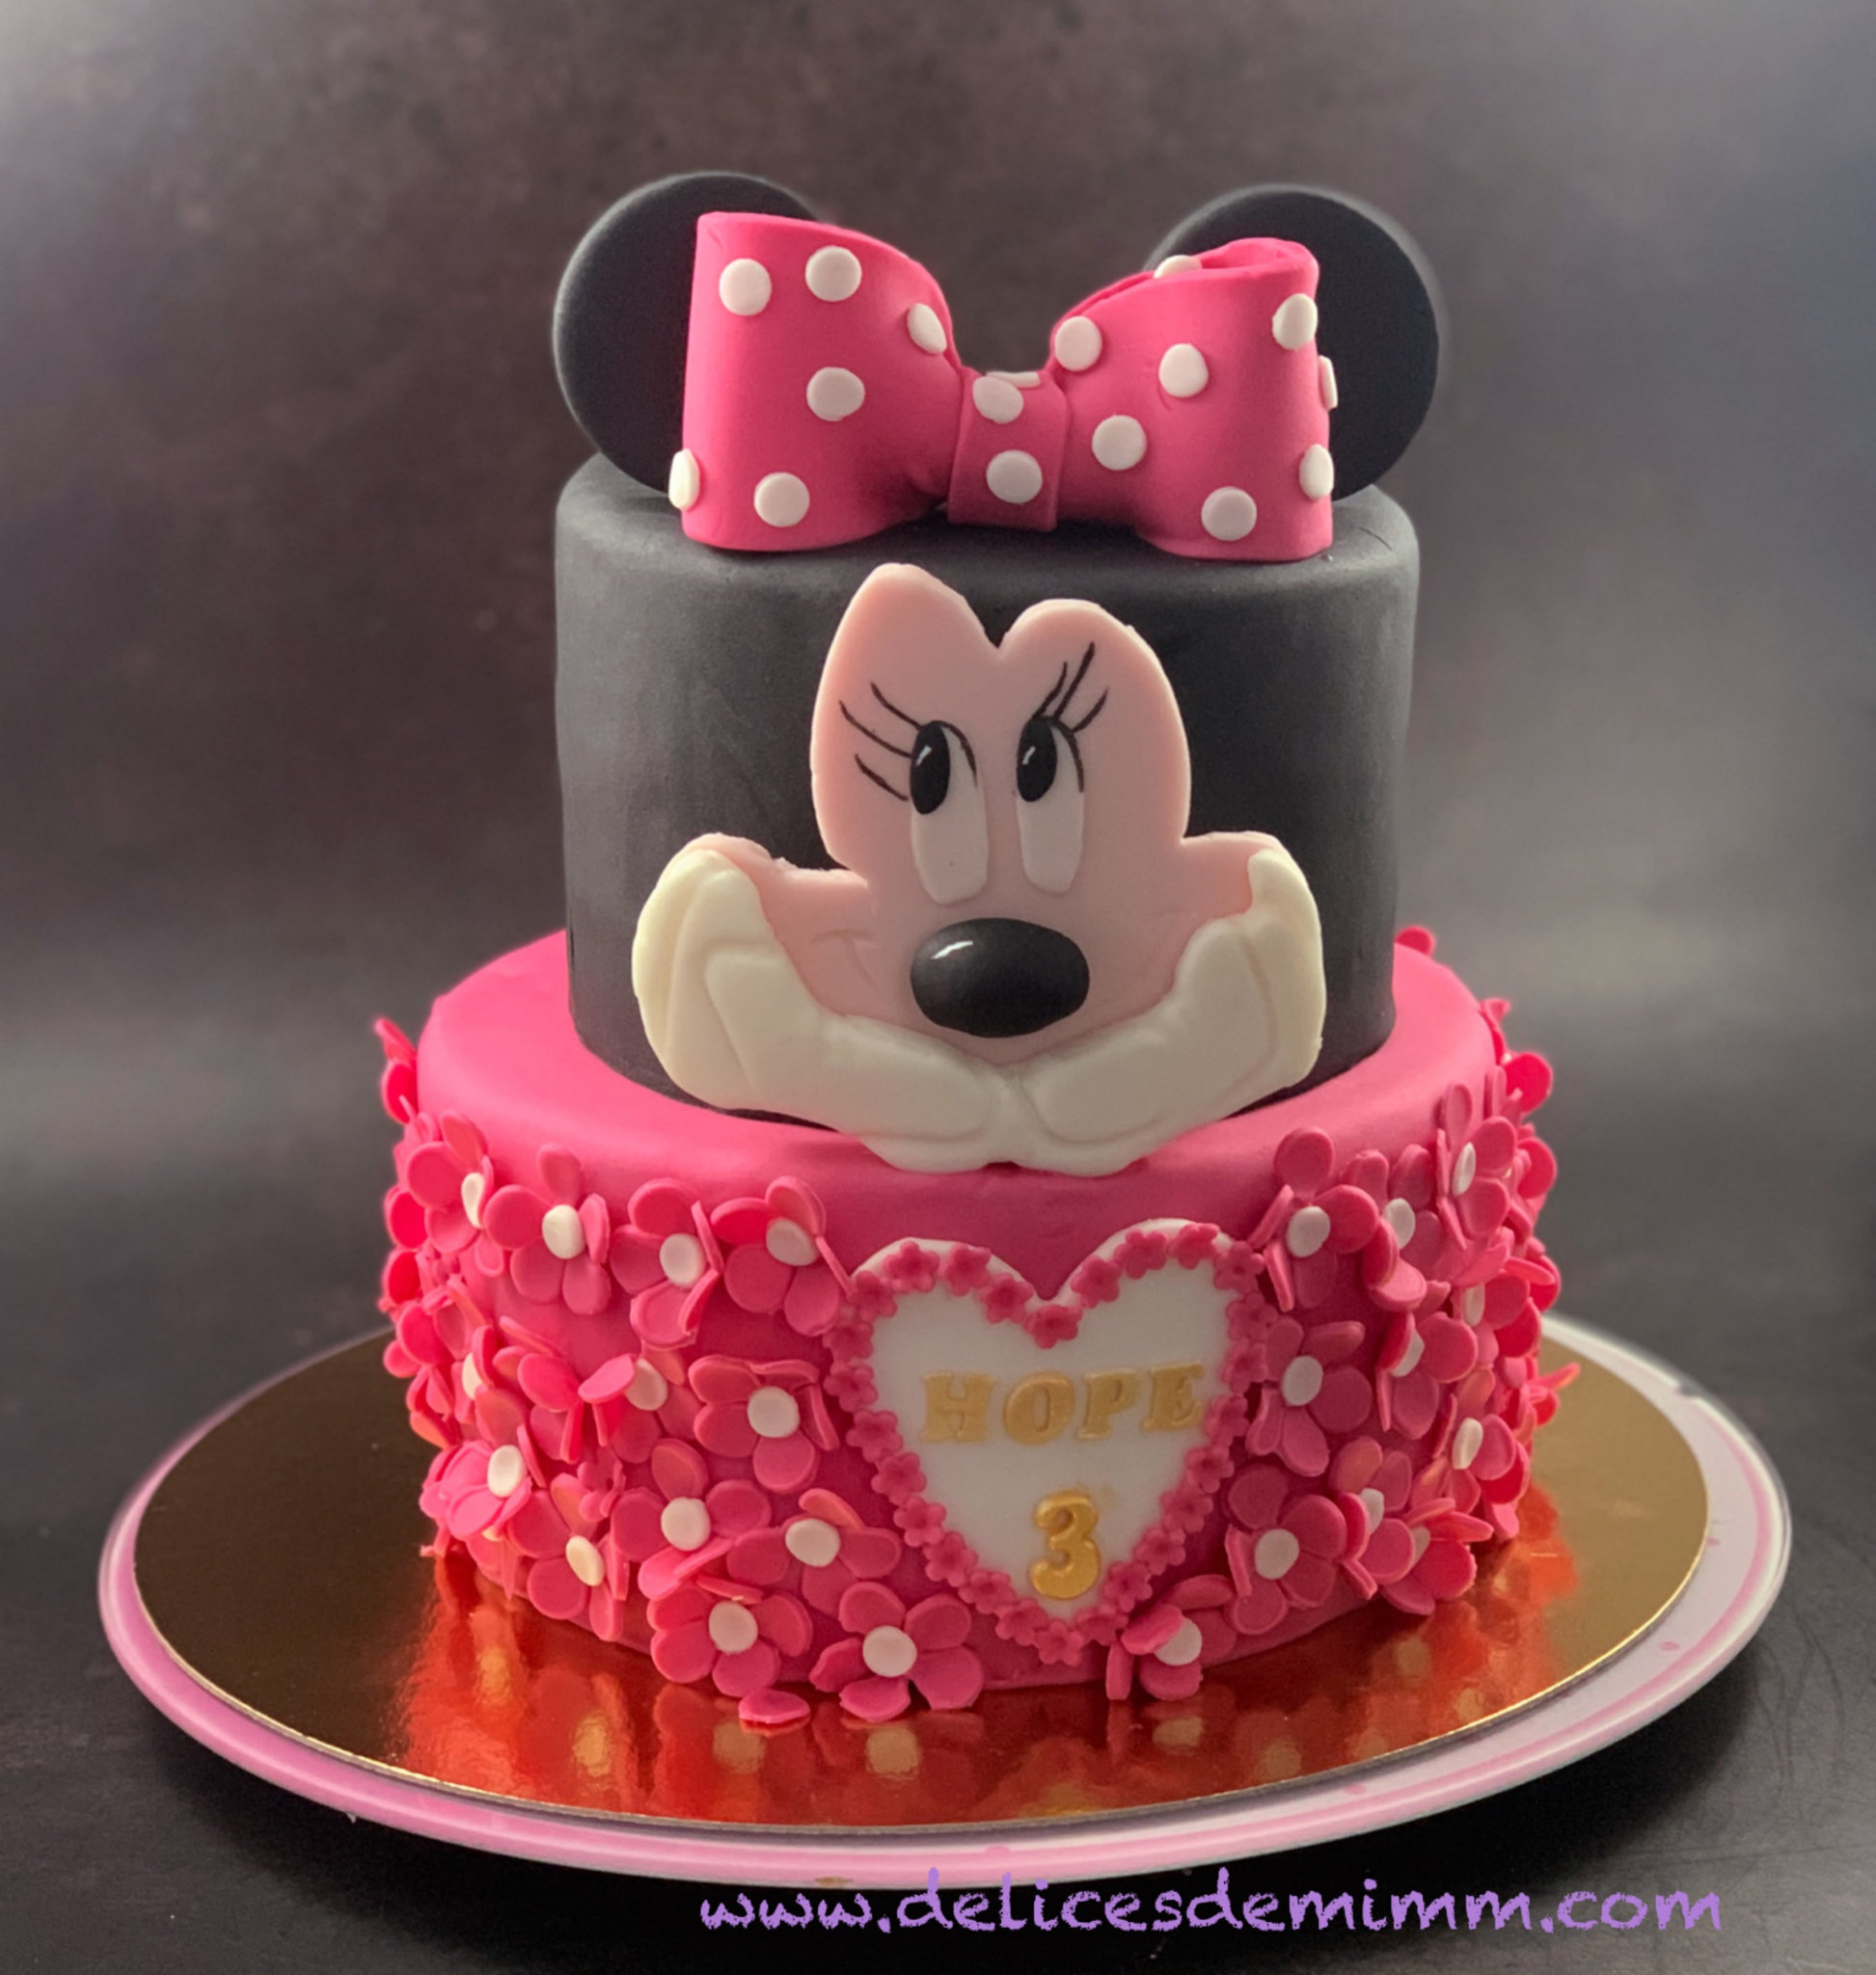 Gâteau d'Anniversaire Minnie Mouse